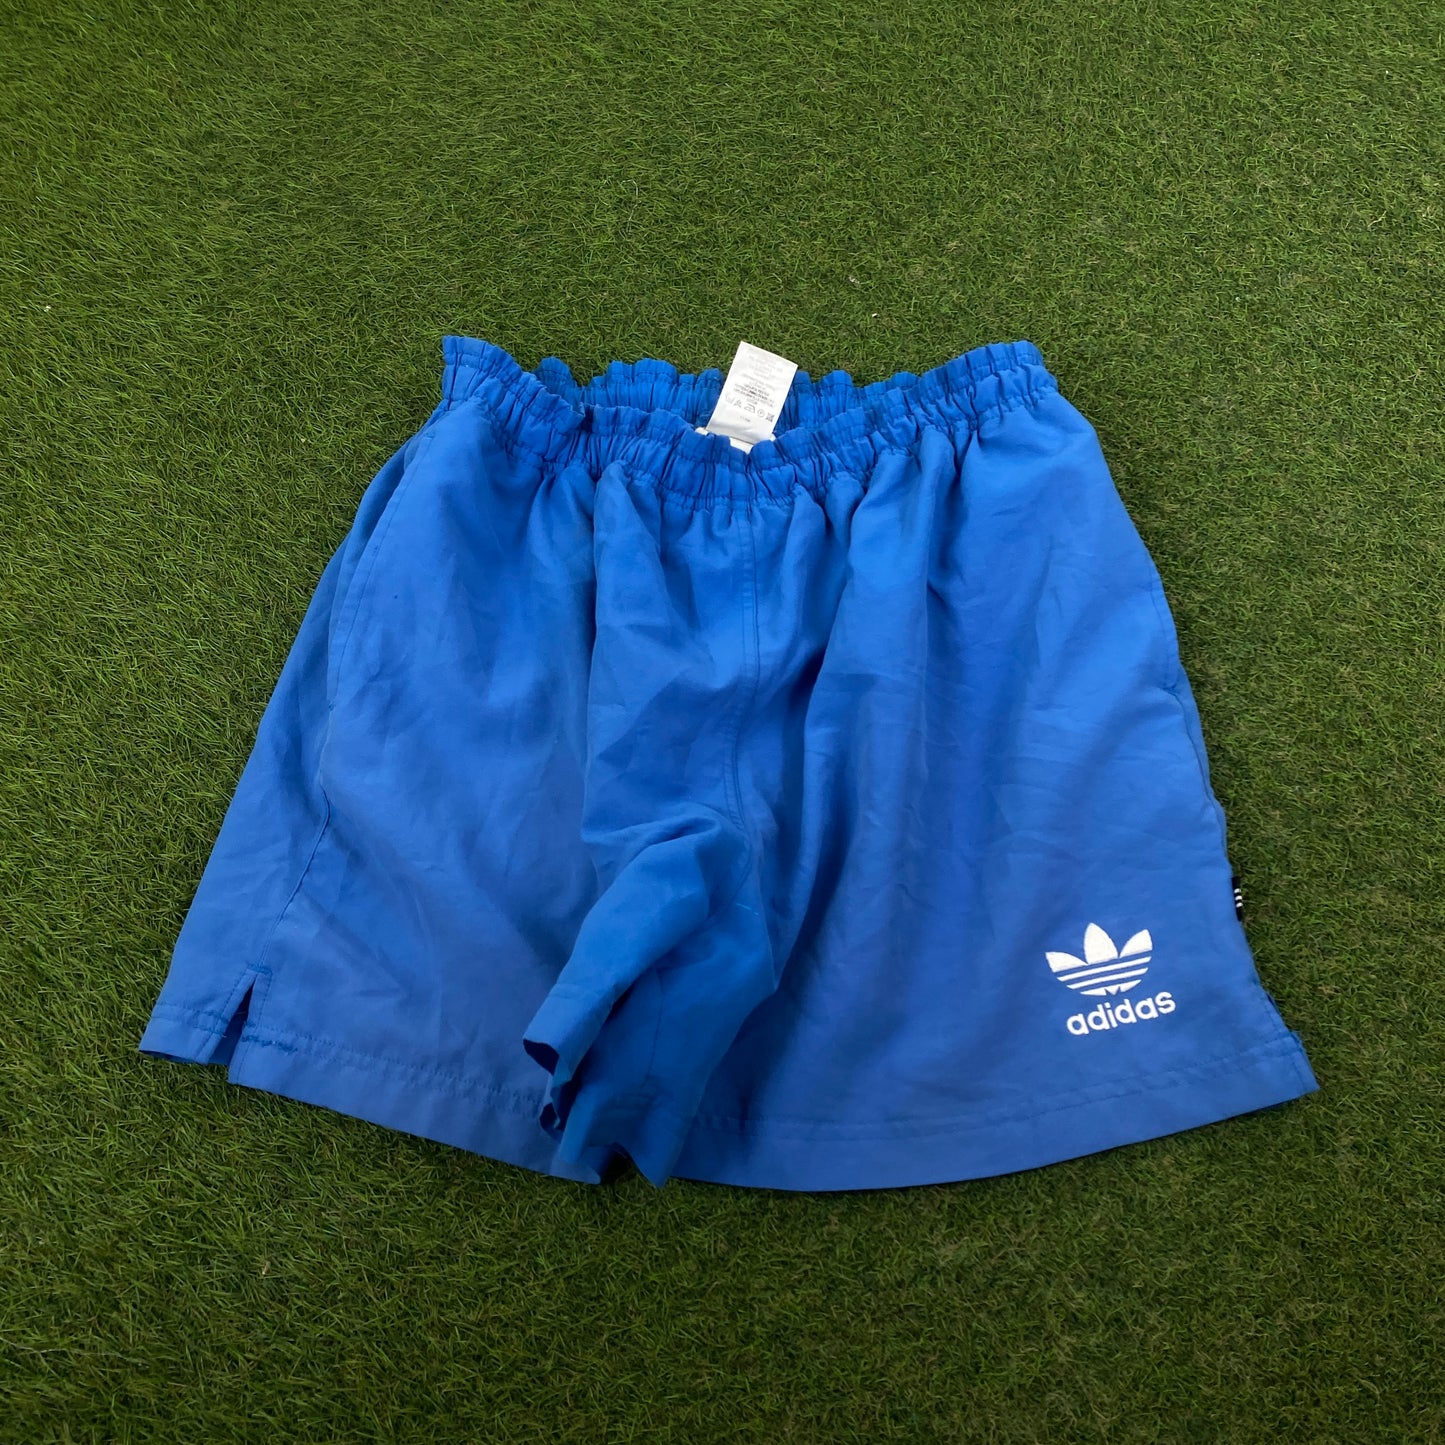 90s Adidas Trefoil Shorts Blue Medium